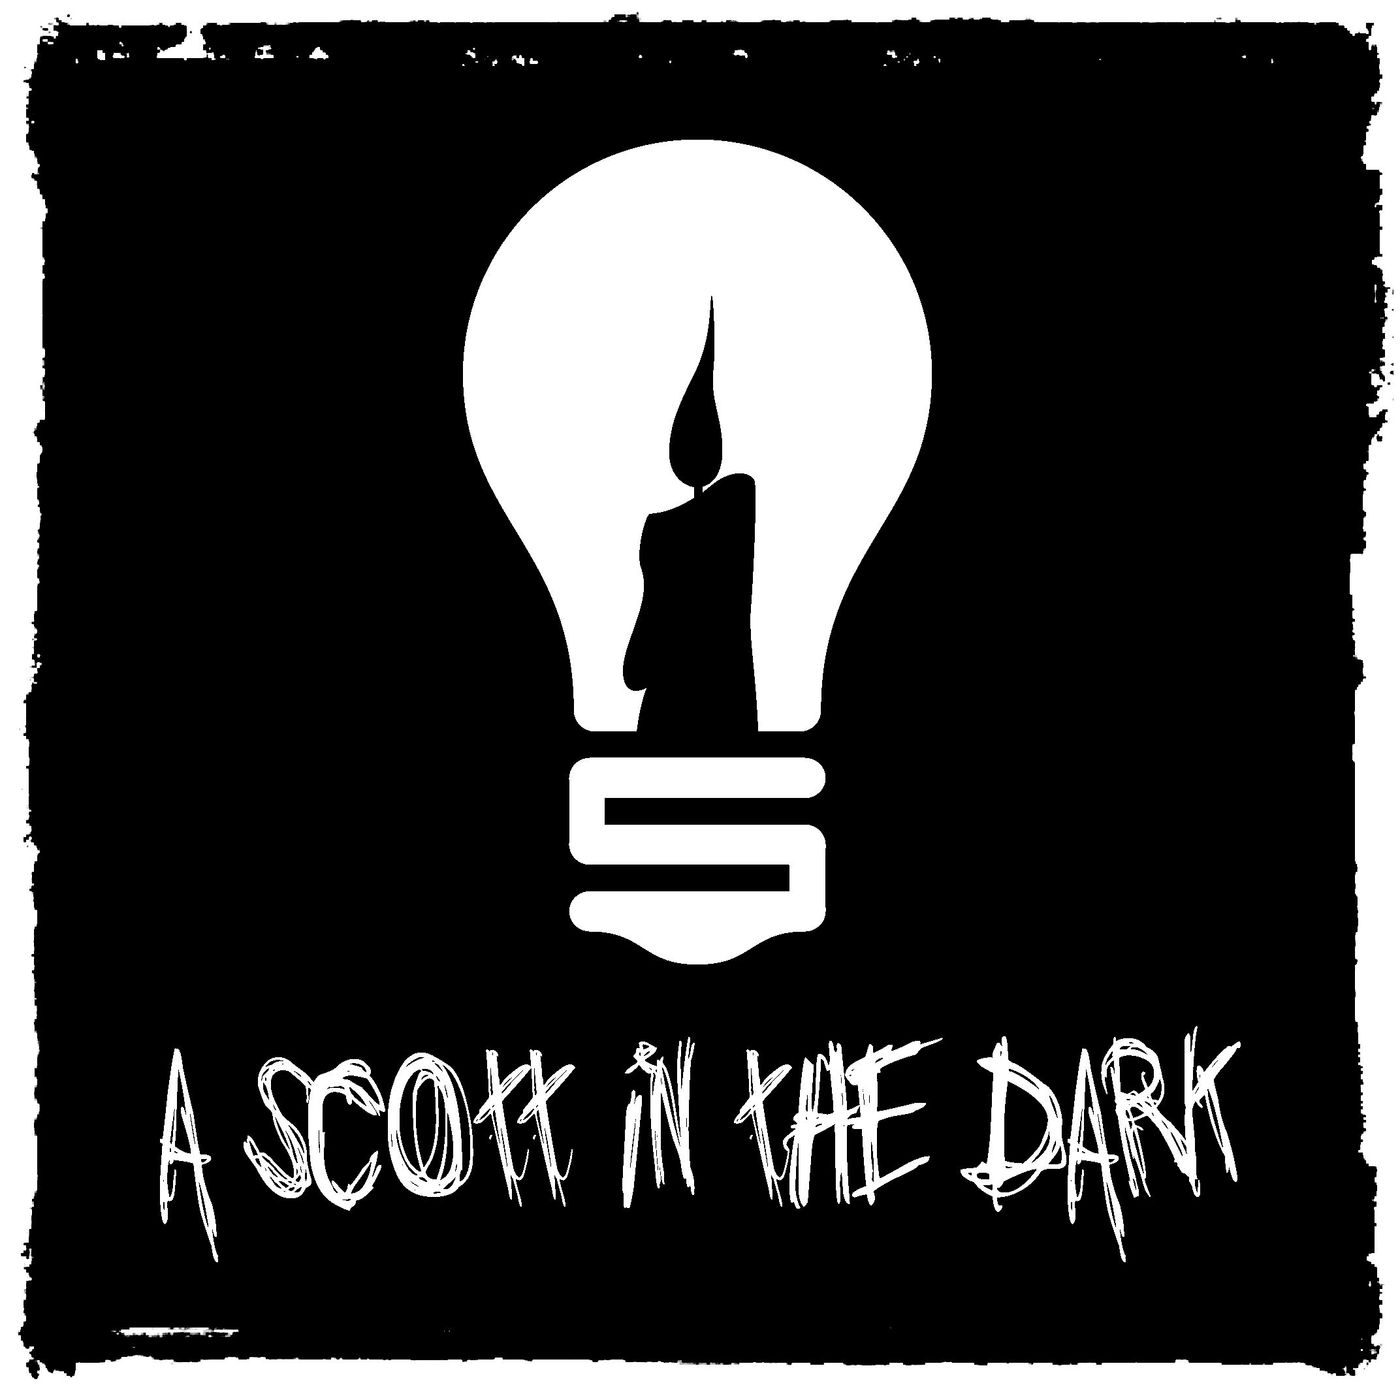 [A Scott in the Dark] Episode 16: Make It Cheap